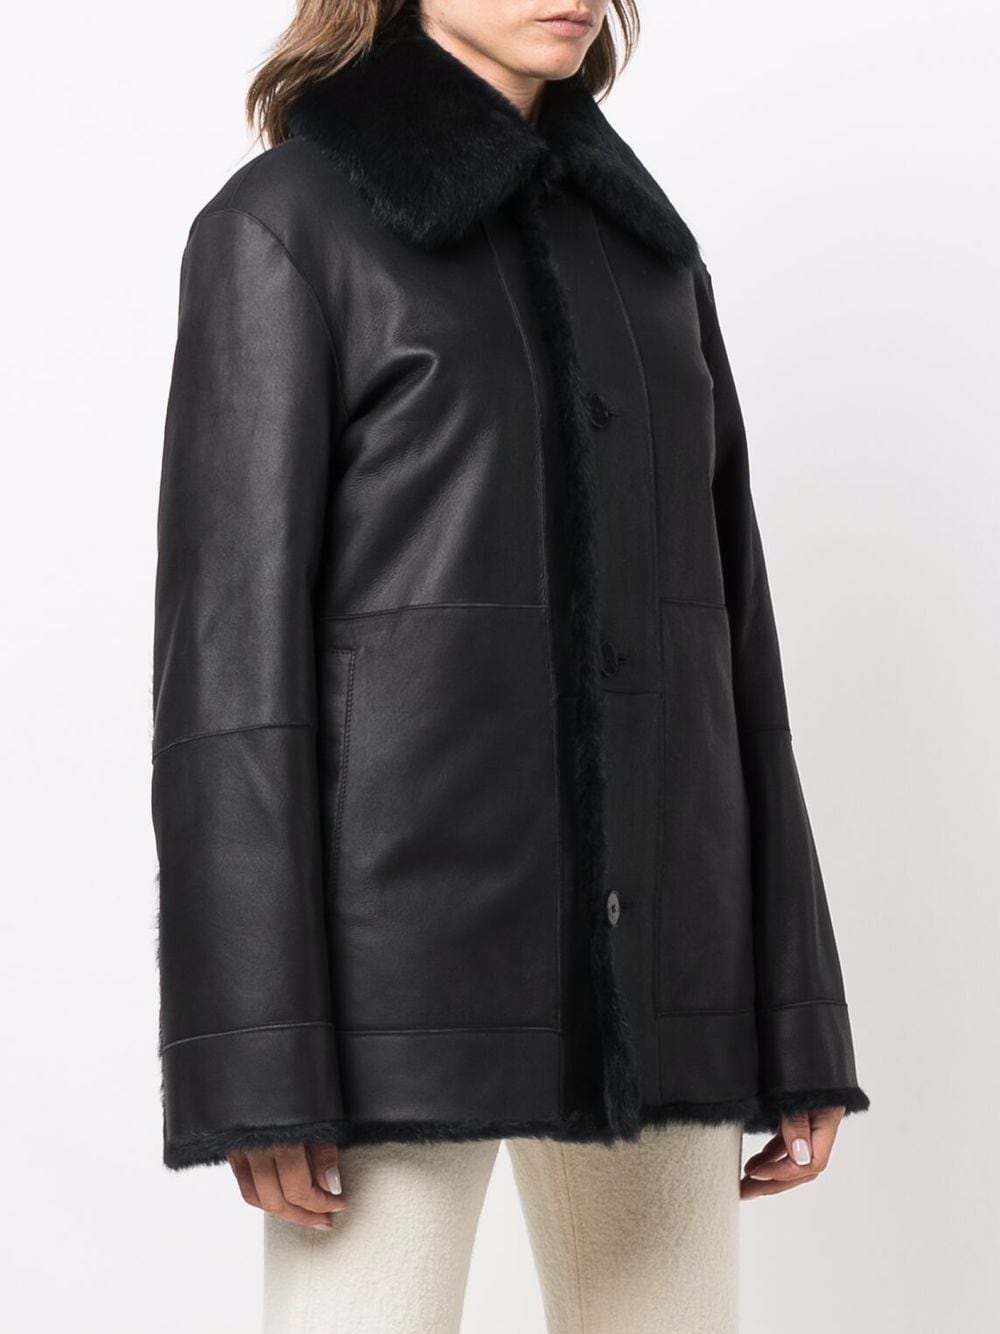 Jil Sander shearling-lined Leather Jacket - Farfetch